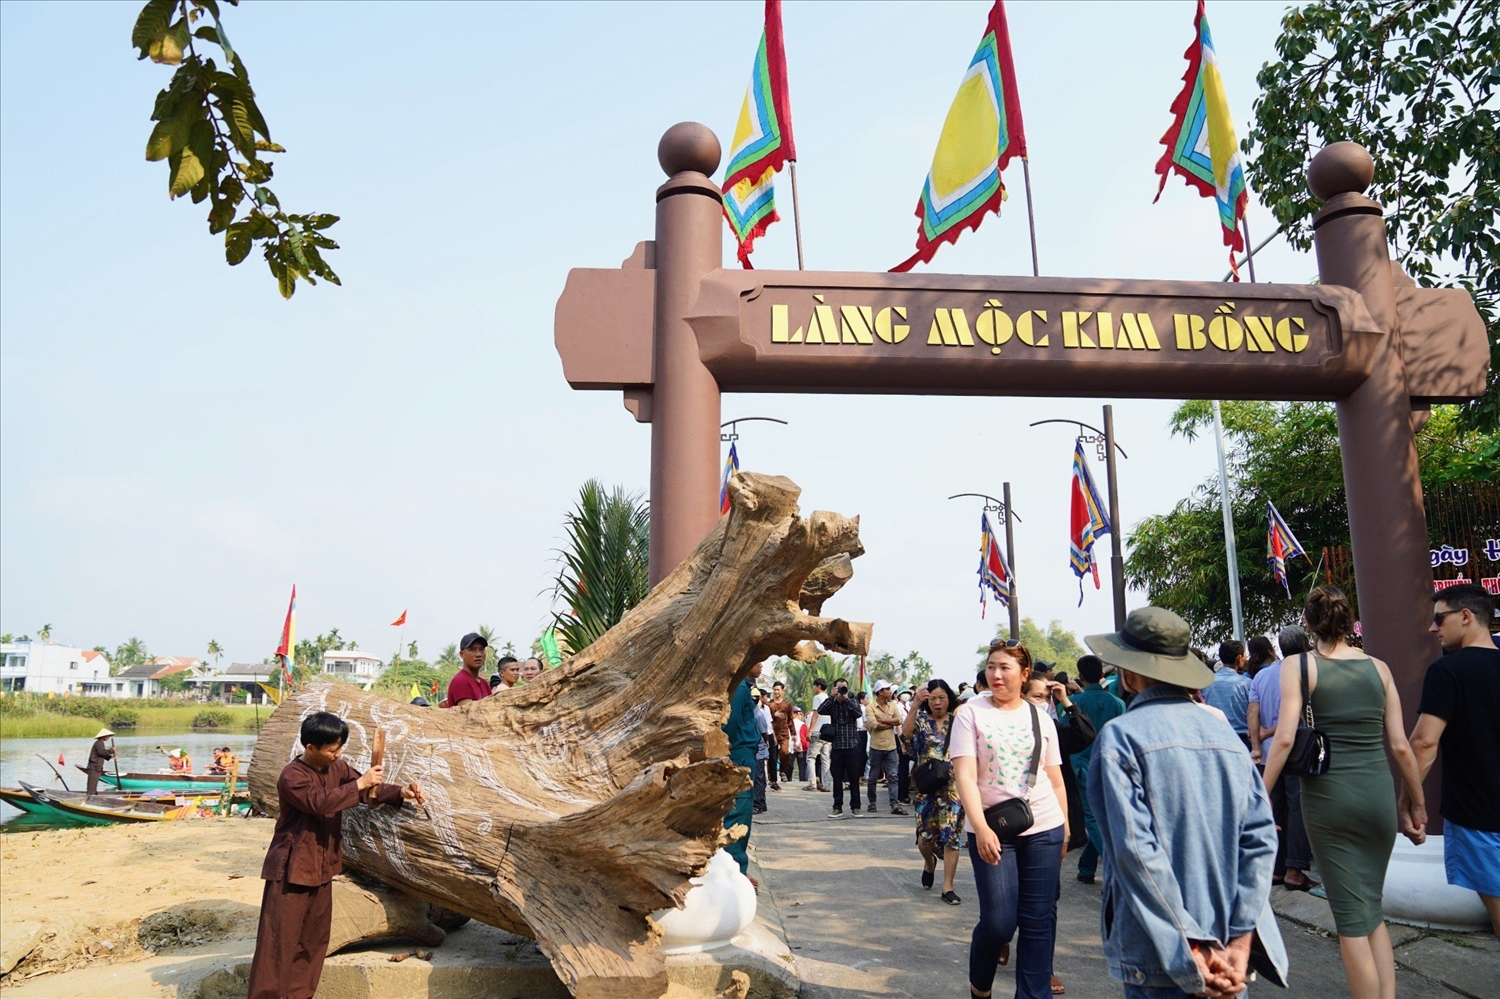 Cổng làng nghề truyền thống Kim Bồng.